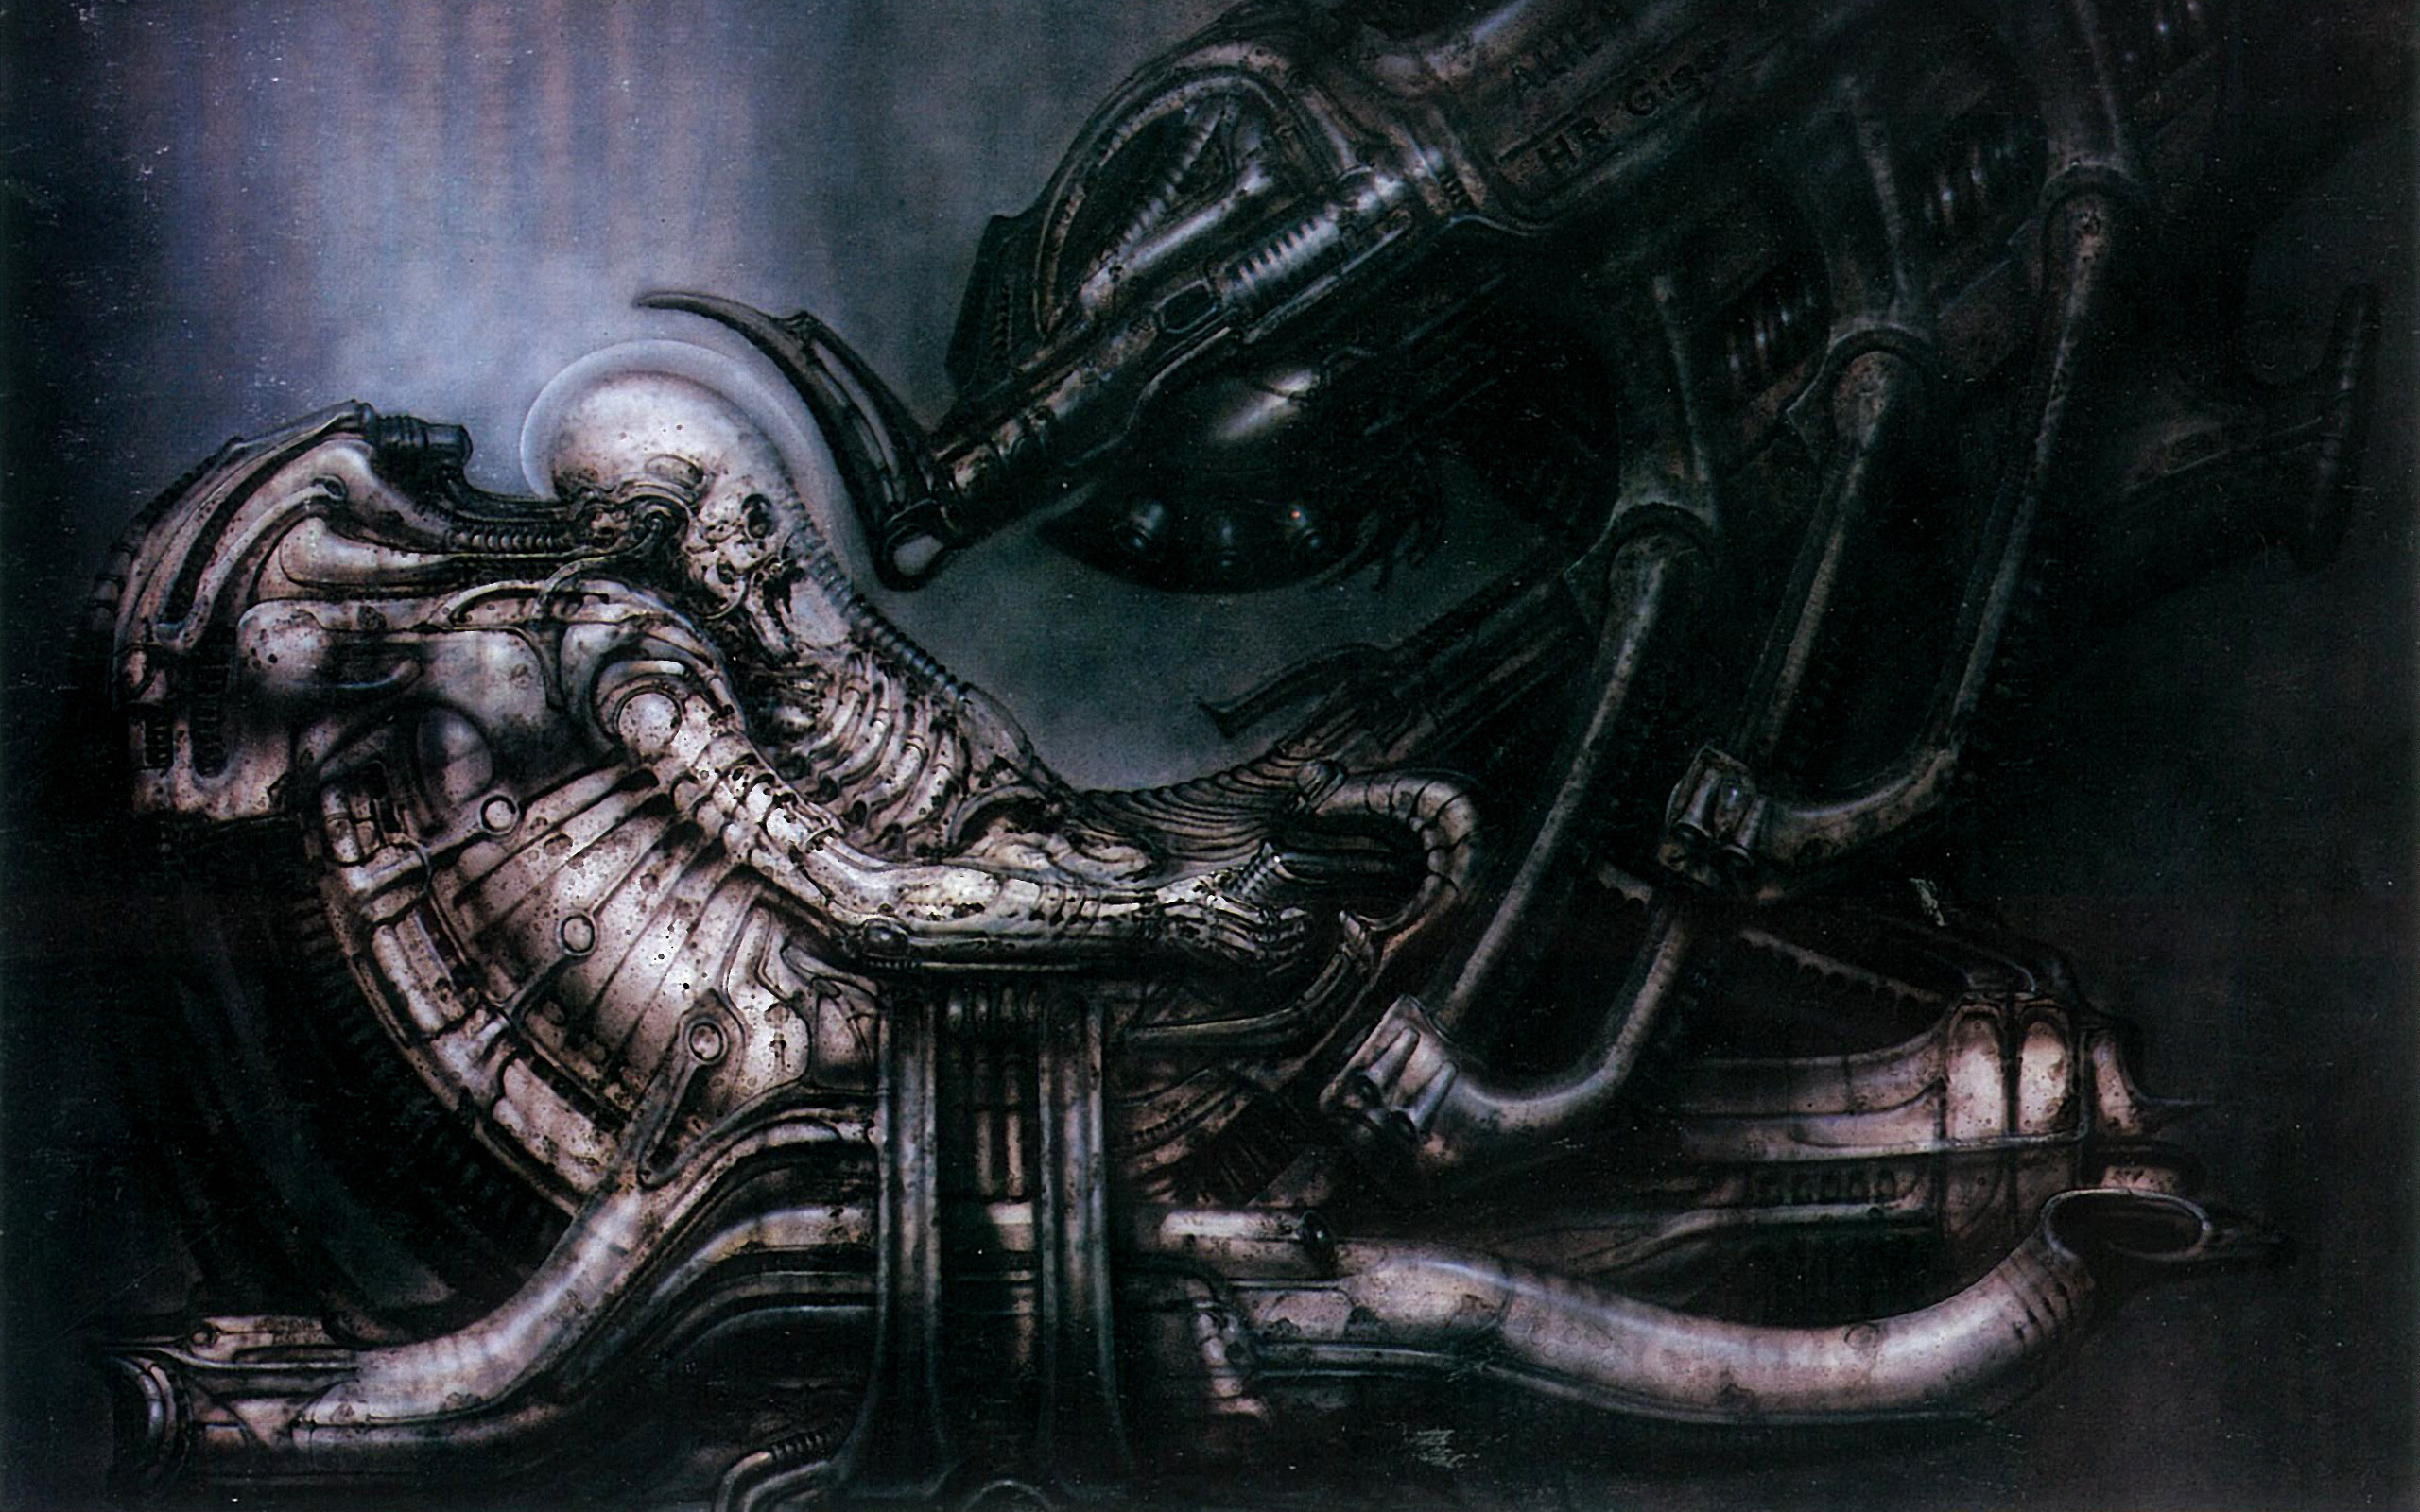 General 2560x1600 H. R. Giger dark black gray detailed movie characters Alien (movie) digital art